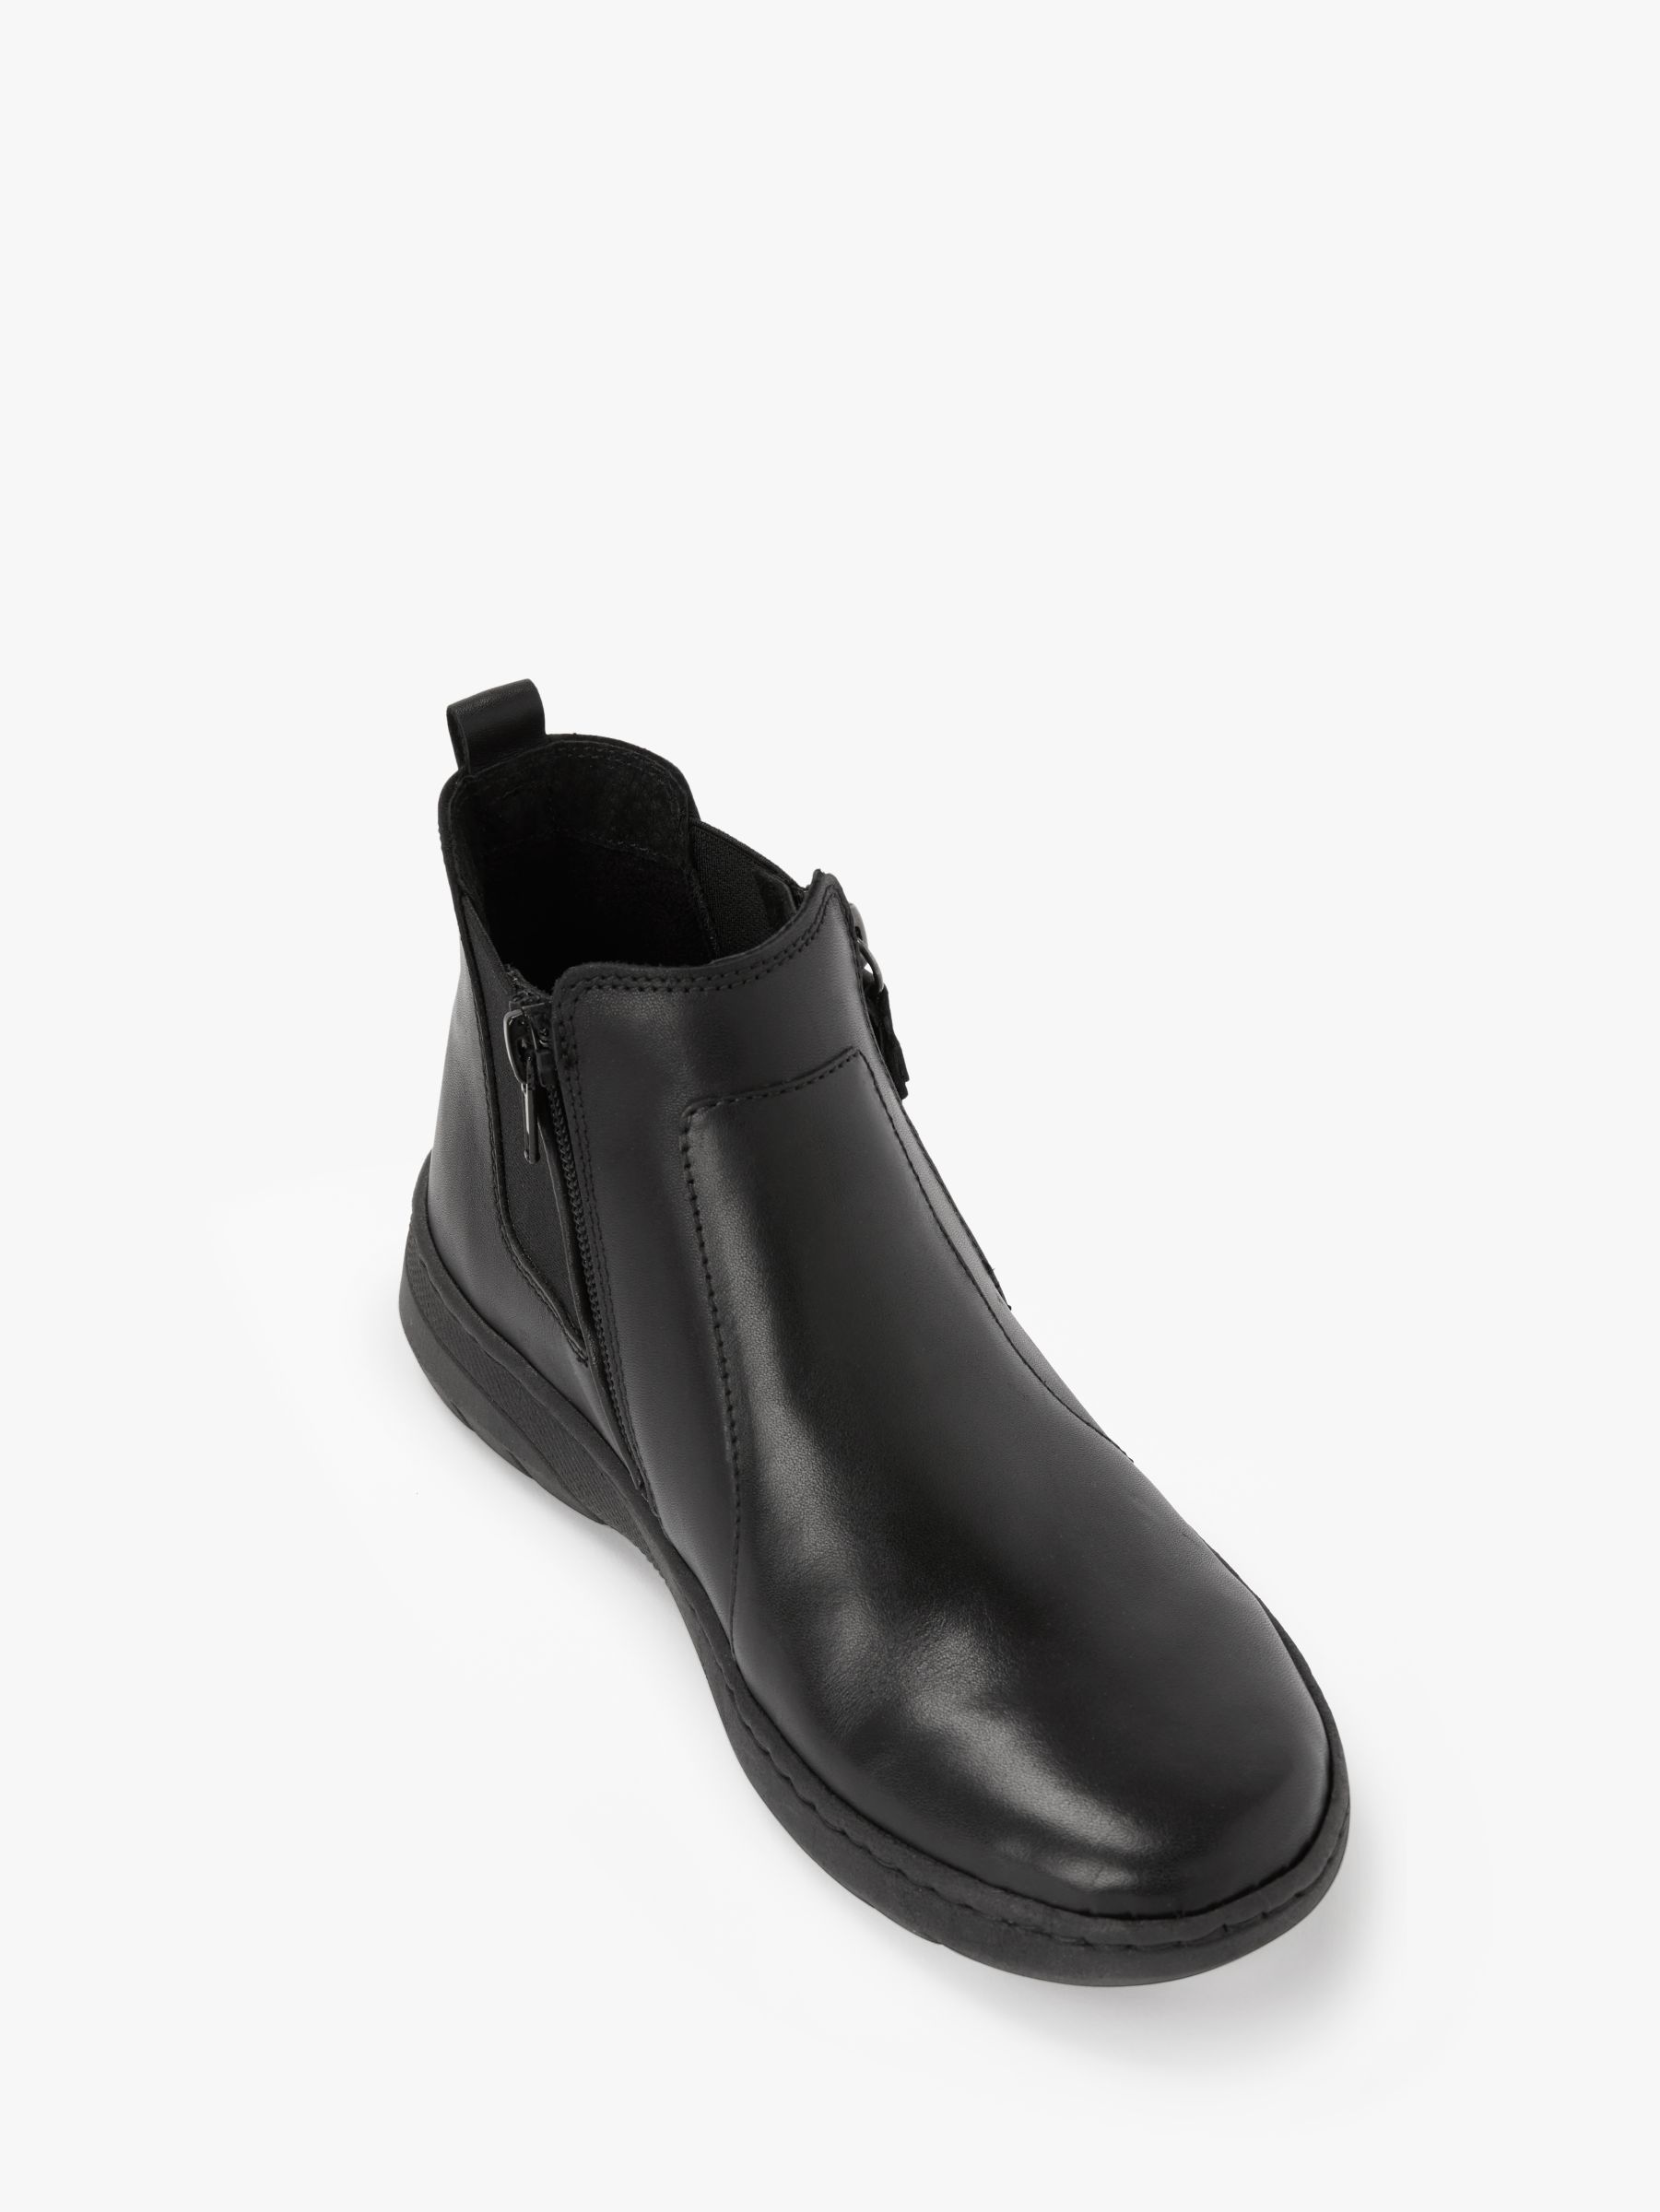 black flat dress boots